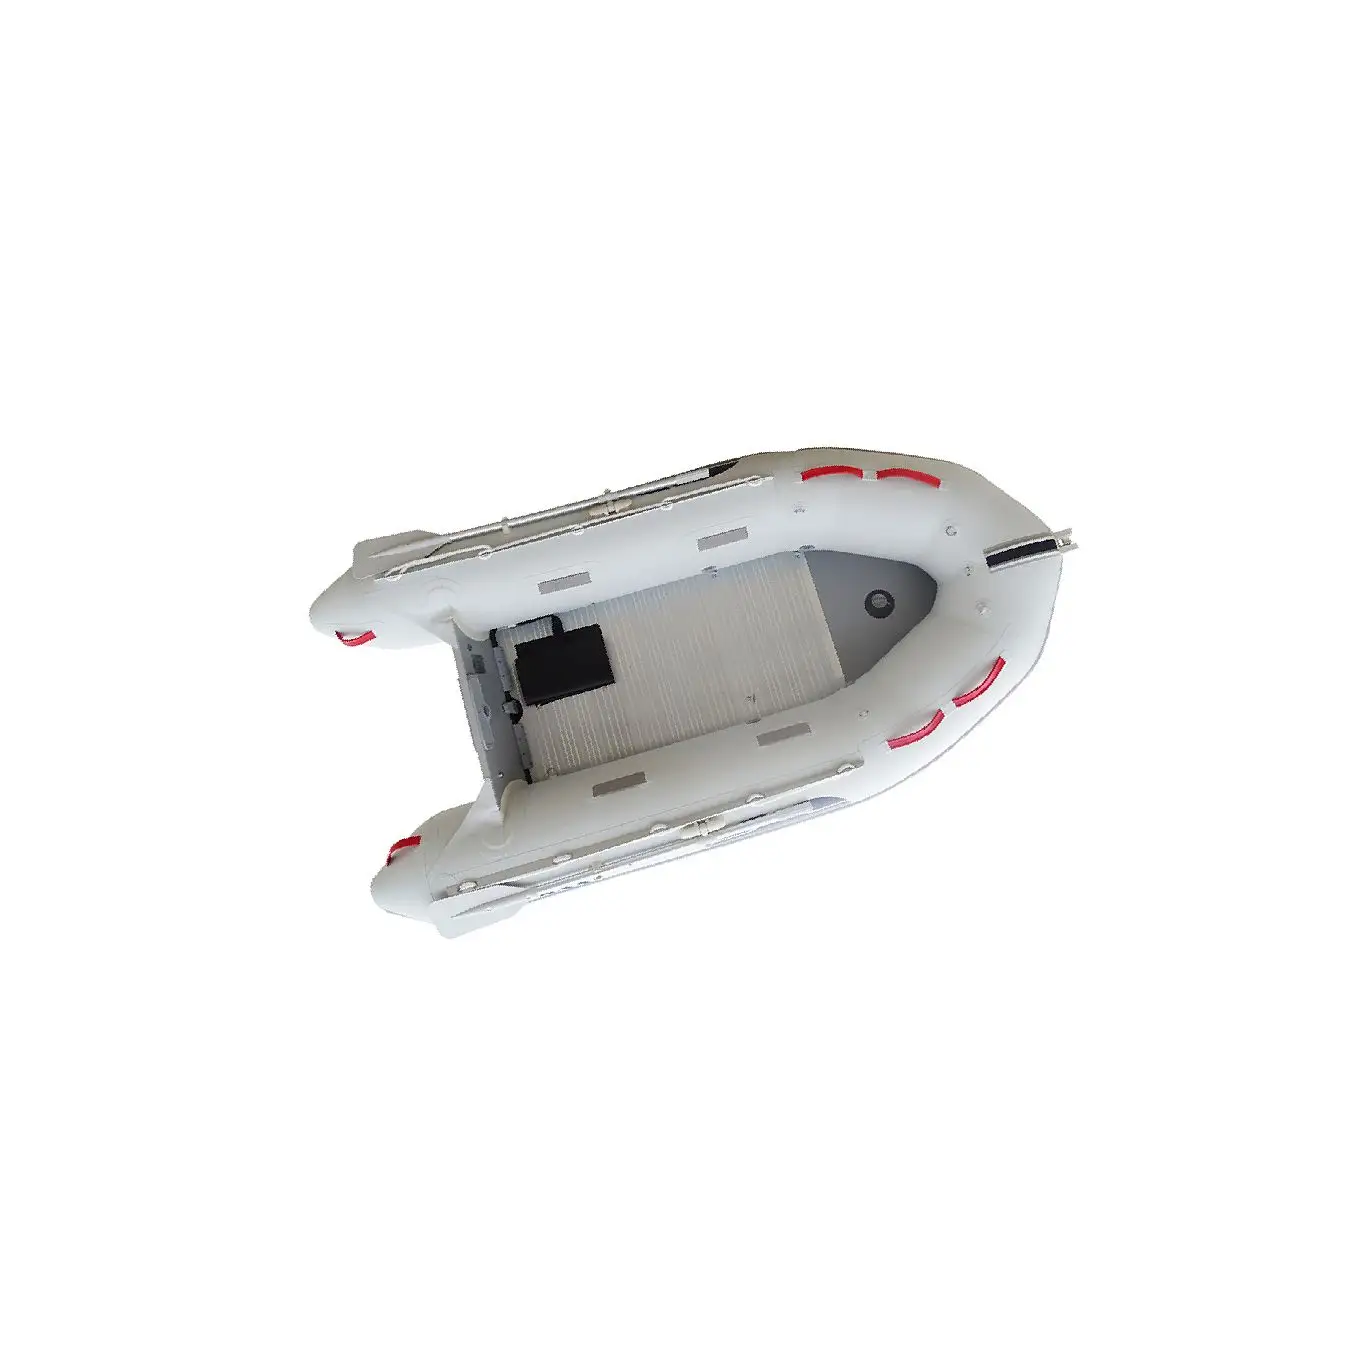 Barco inflable de goma para rescate de agua, 380x175cm, 7 personas, con suelo de aluminio